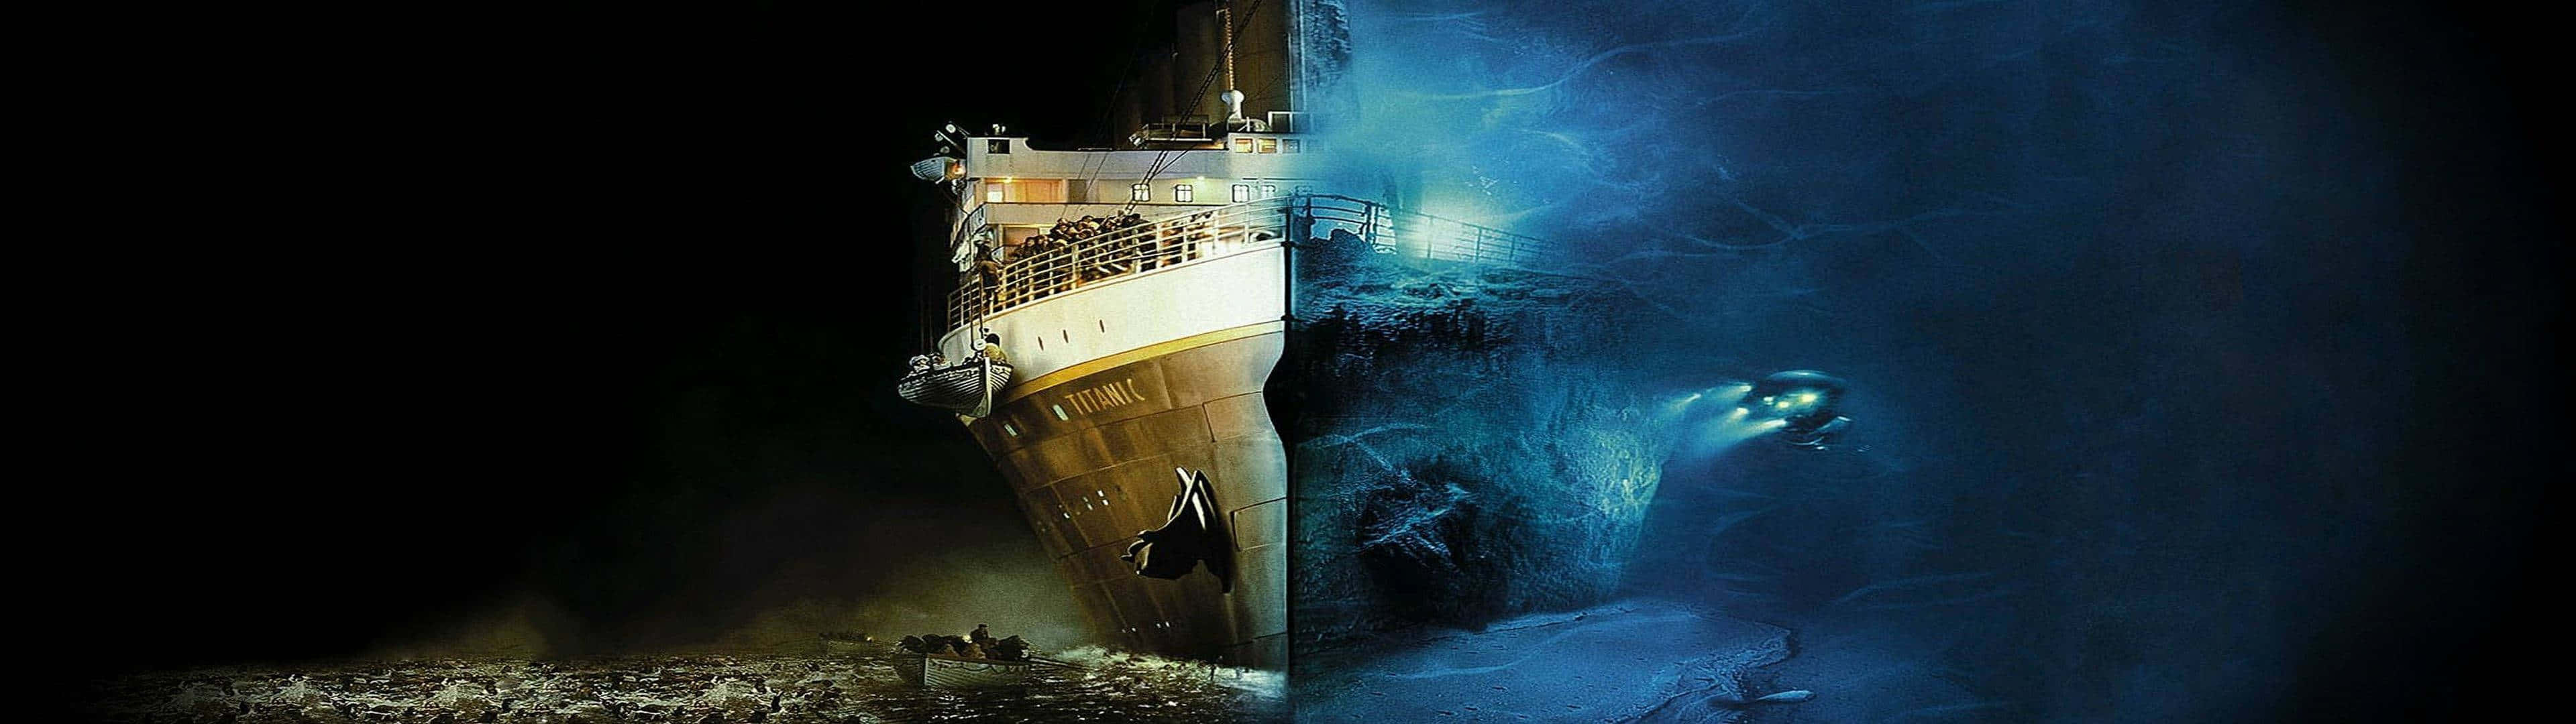 Titanicfilmposter - Hd-hintergrundbilder